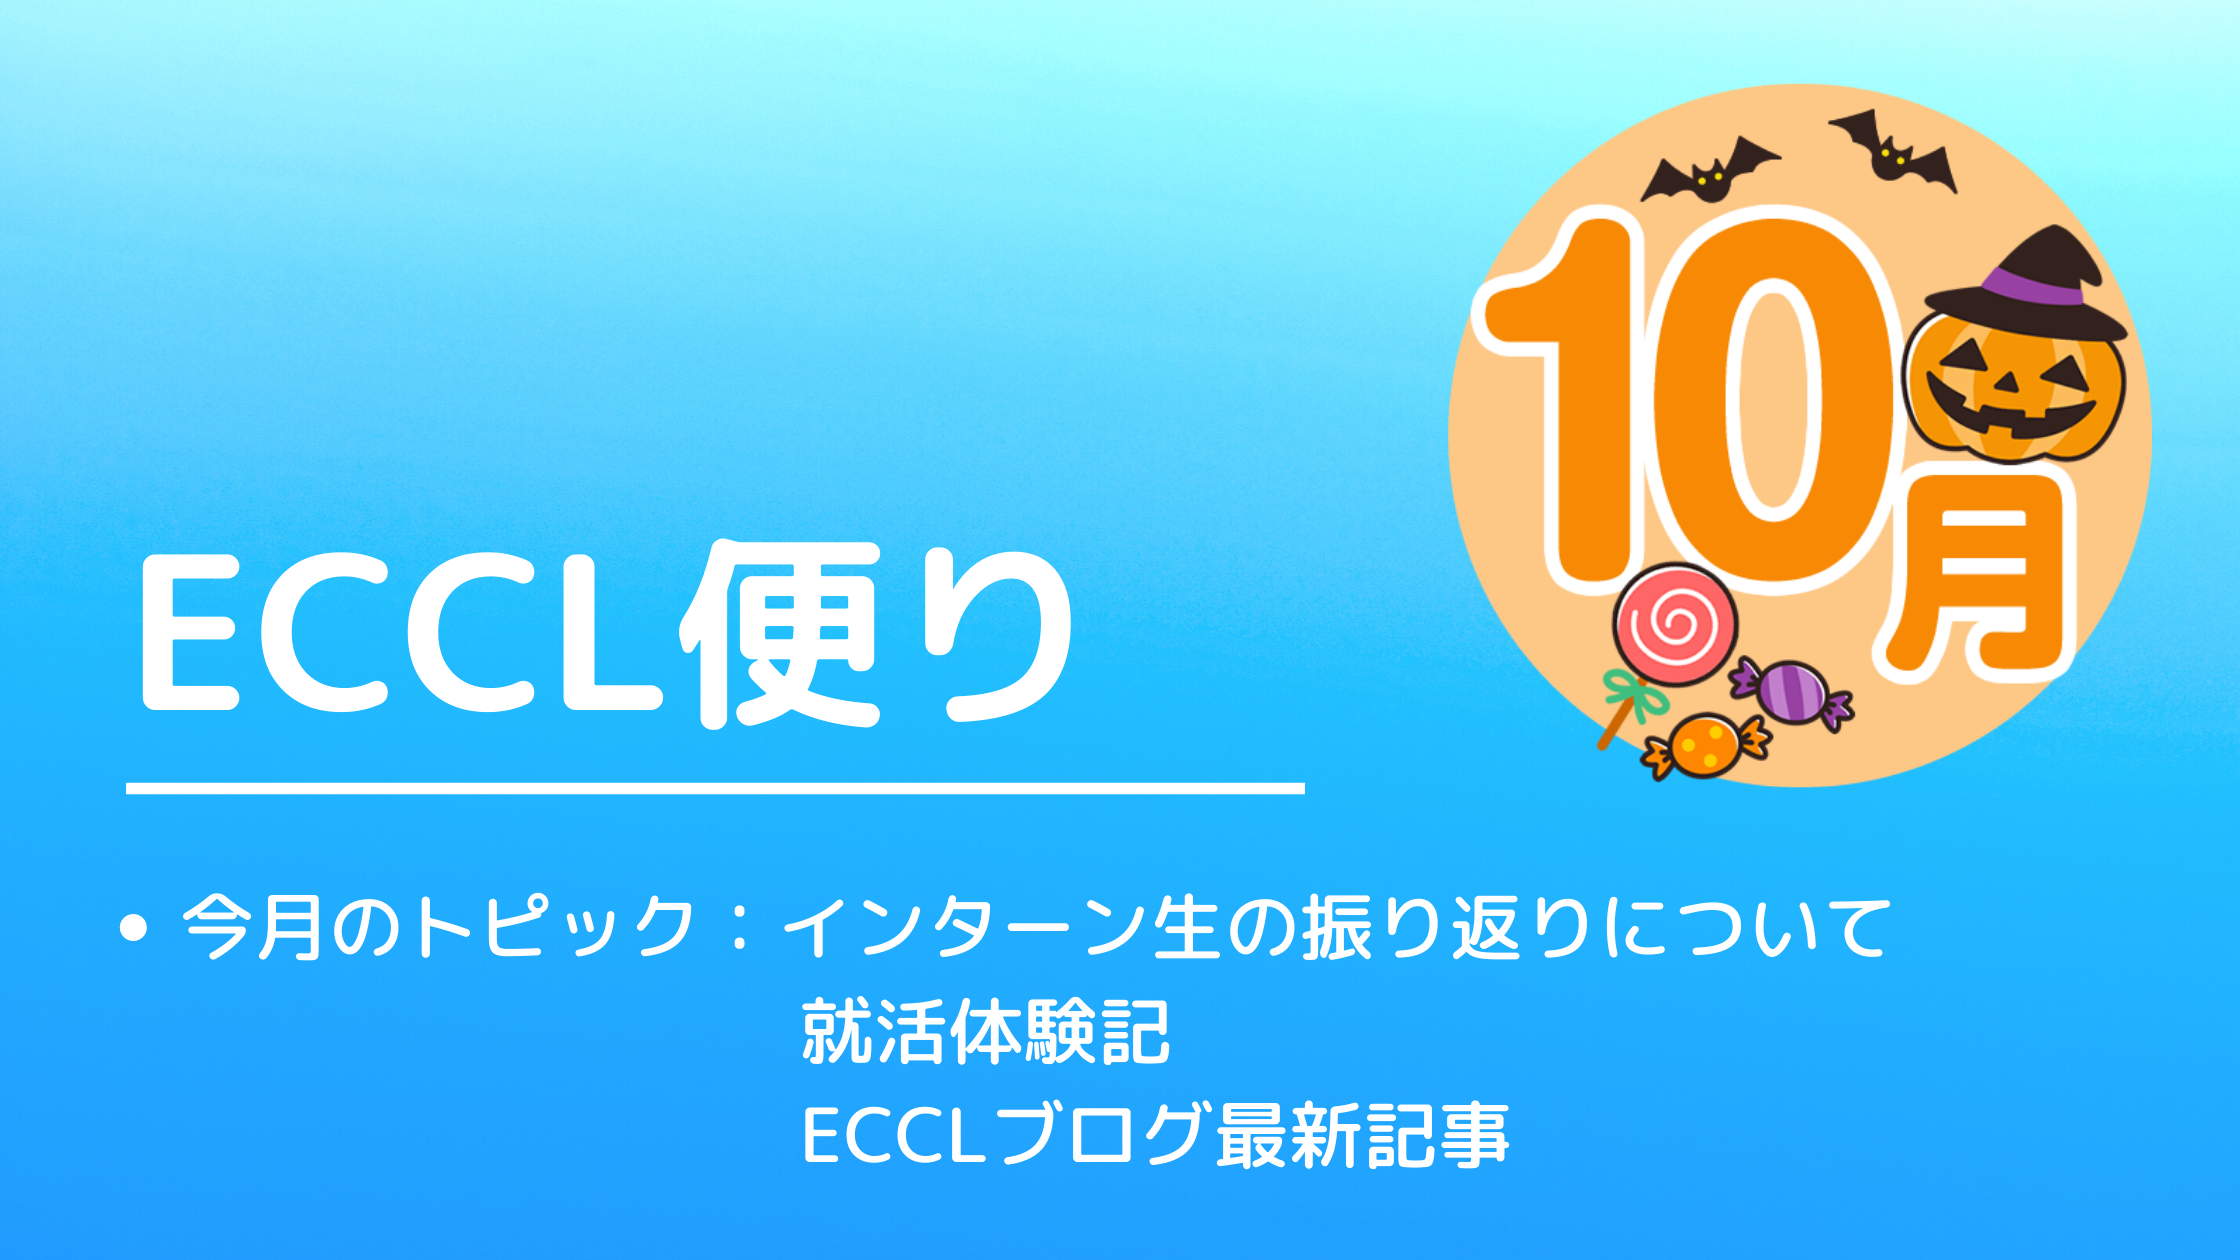 ECCL便り9月号♪